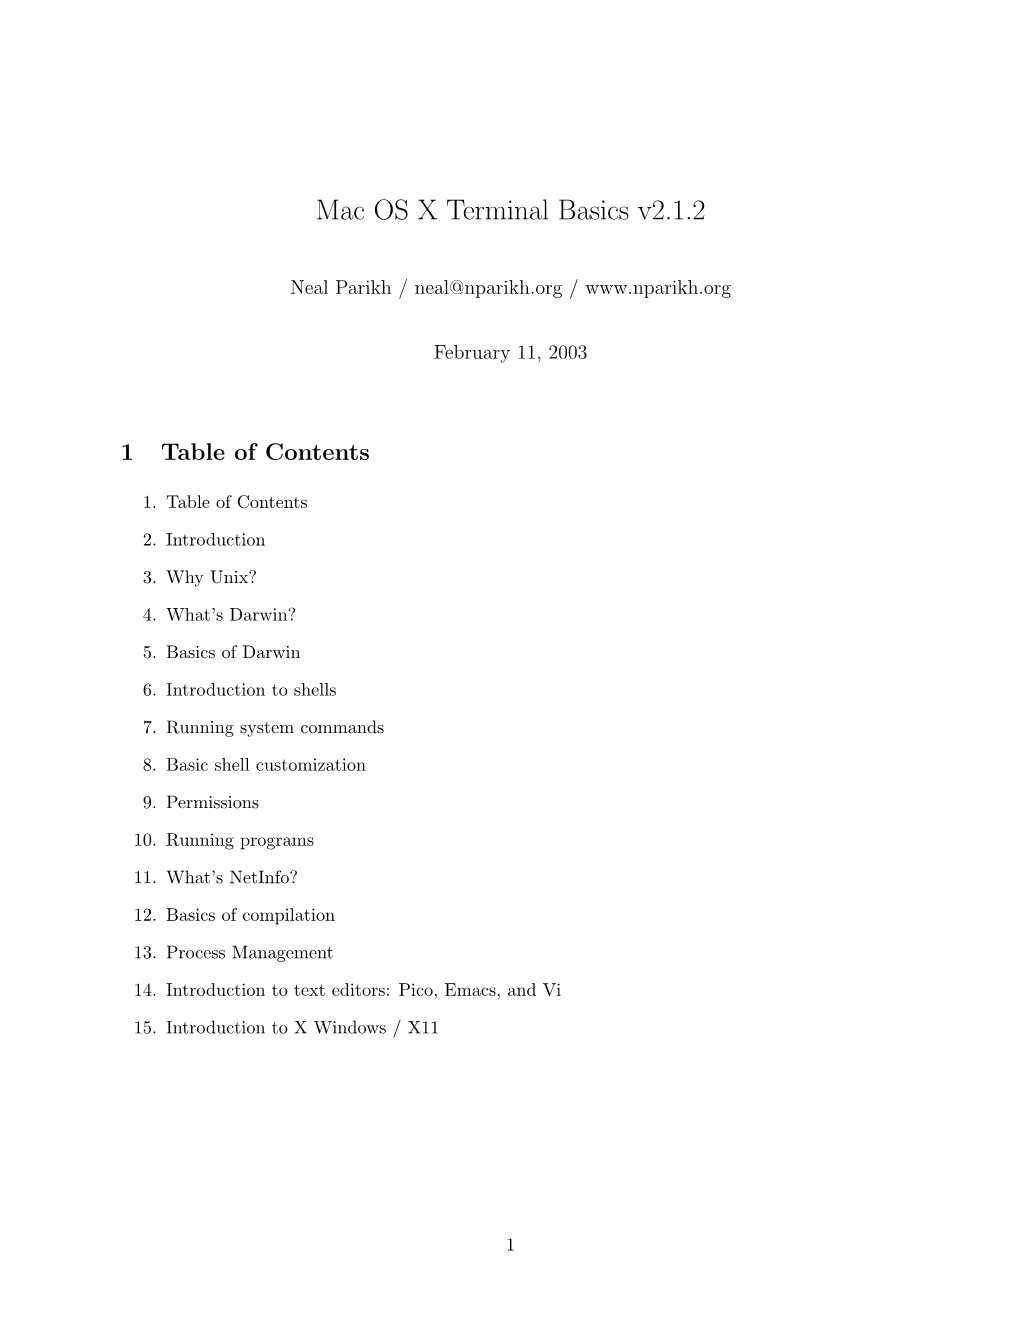 Mac OS X Terminal Basics V2.1.2